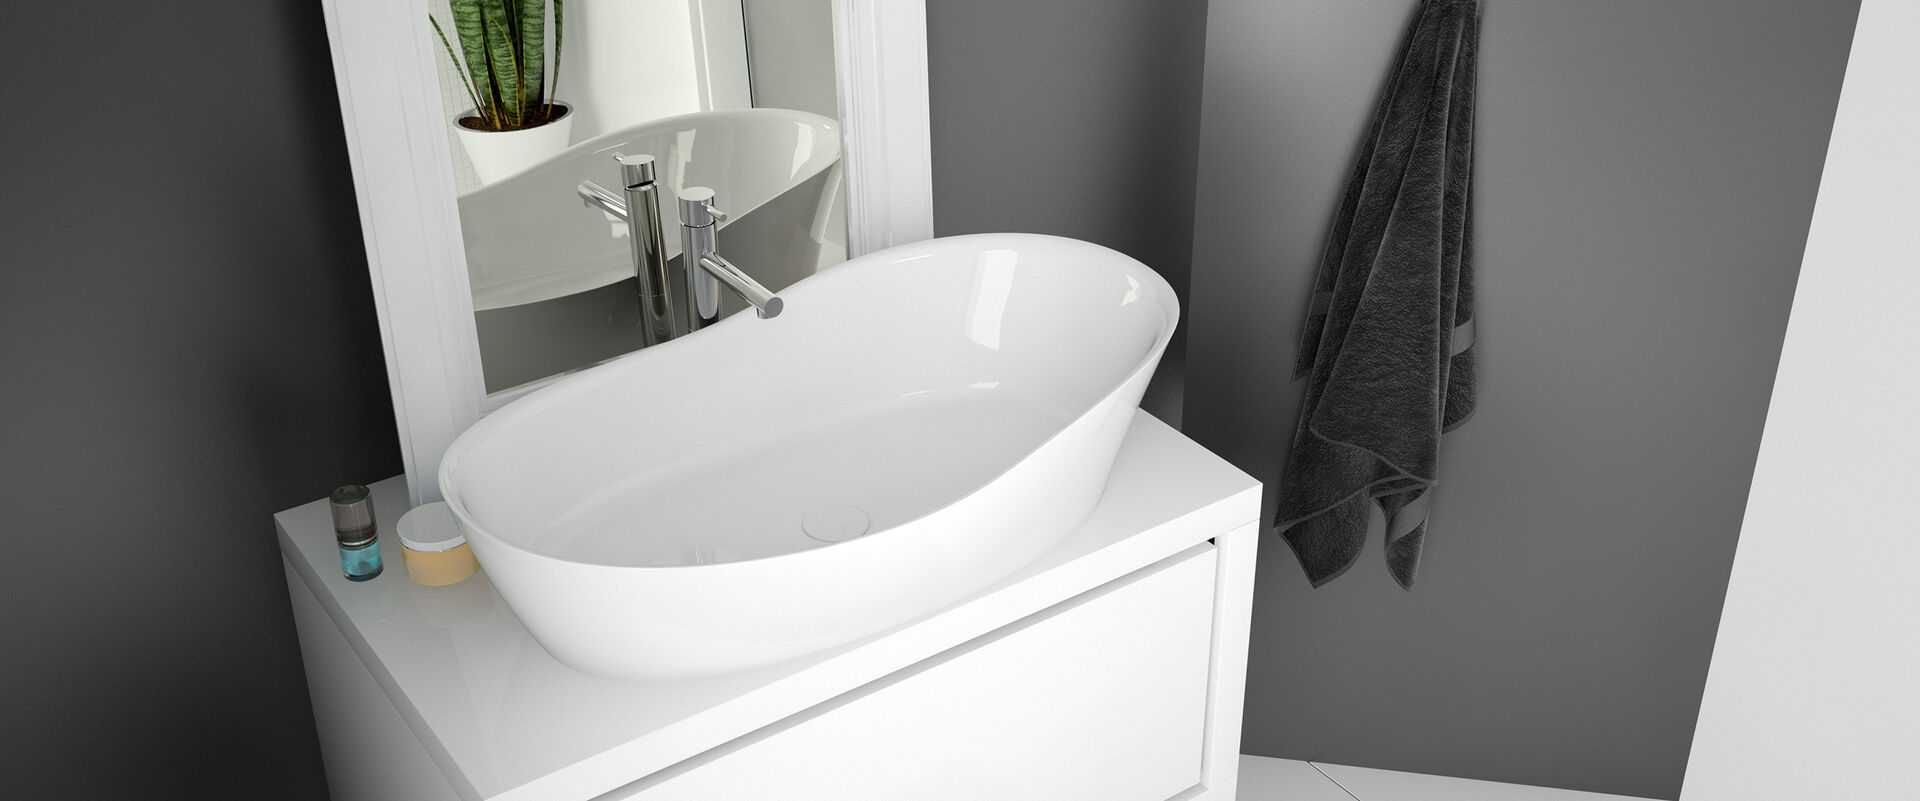 Elegant geschwungenes weißes Waschbecken Namur von Hoesch. Es steht auf einen Waschtisch, dahinter befindet sich ein Spiegel. An der Grauen Wand hängt ein graues Handtuch.